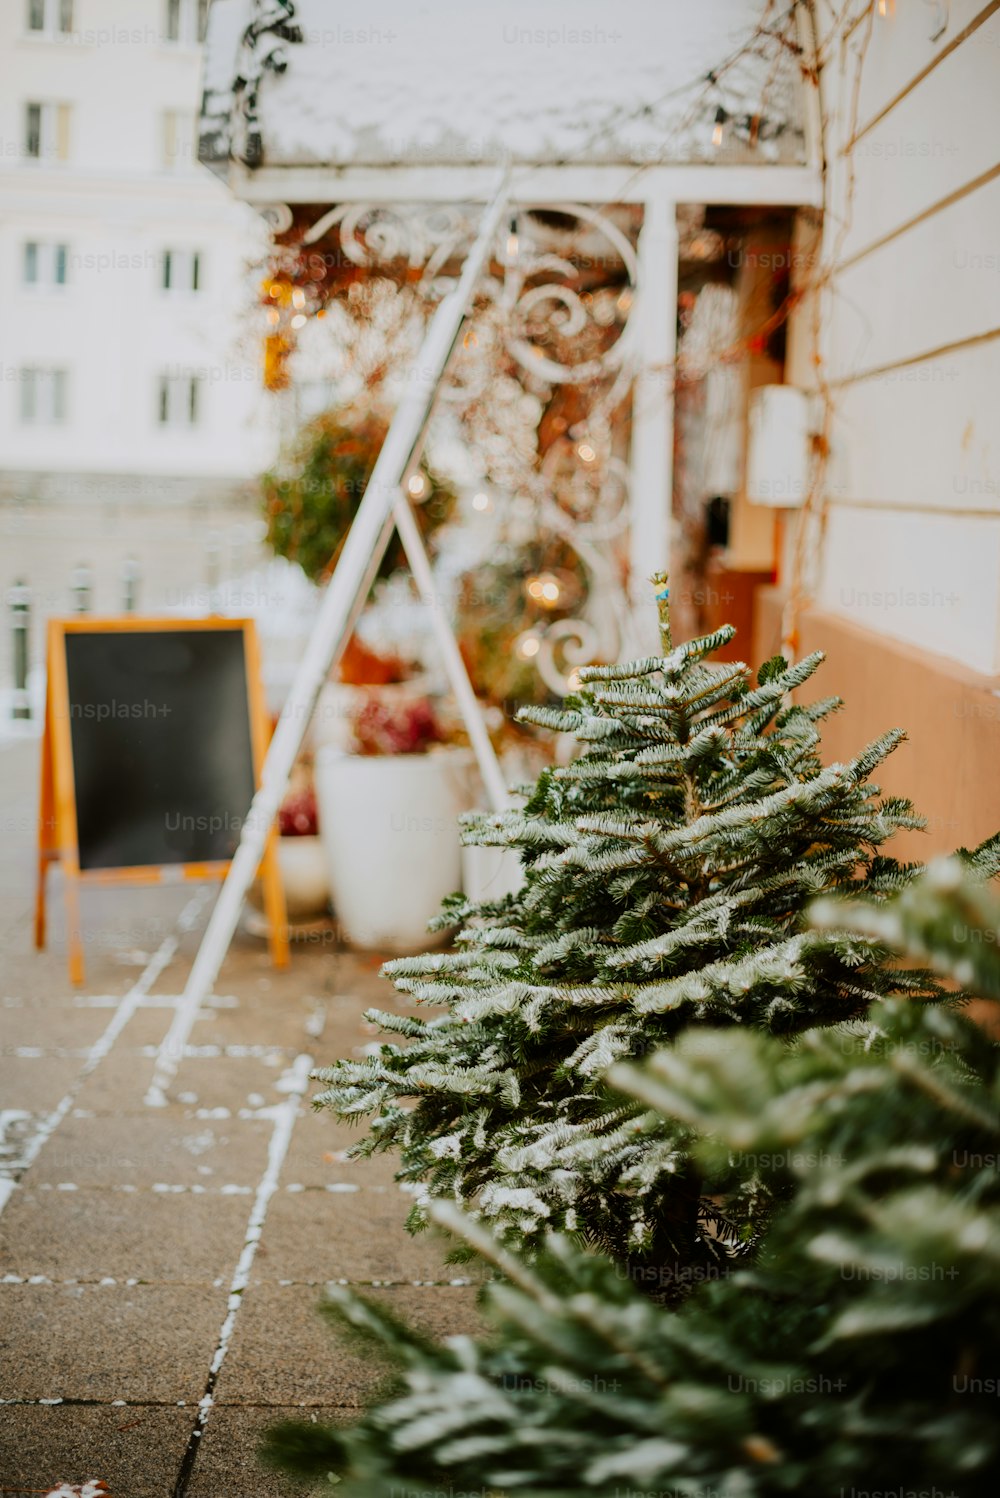 Uma pequena árvore de Natal sentada na lateral de um edifício